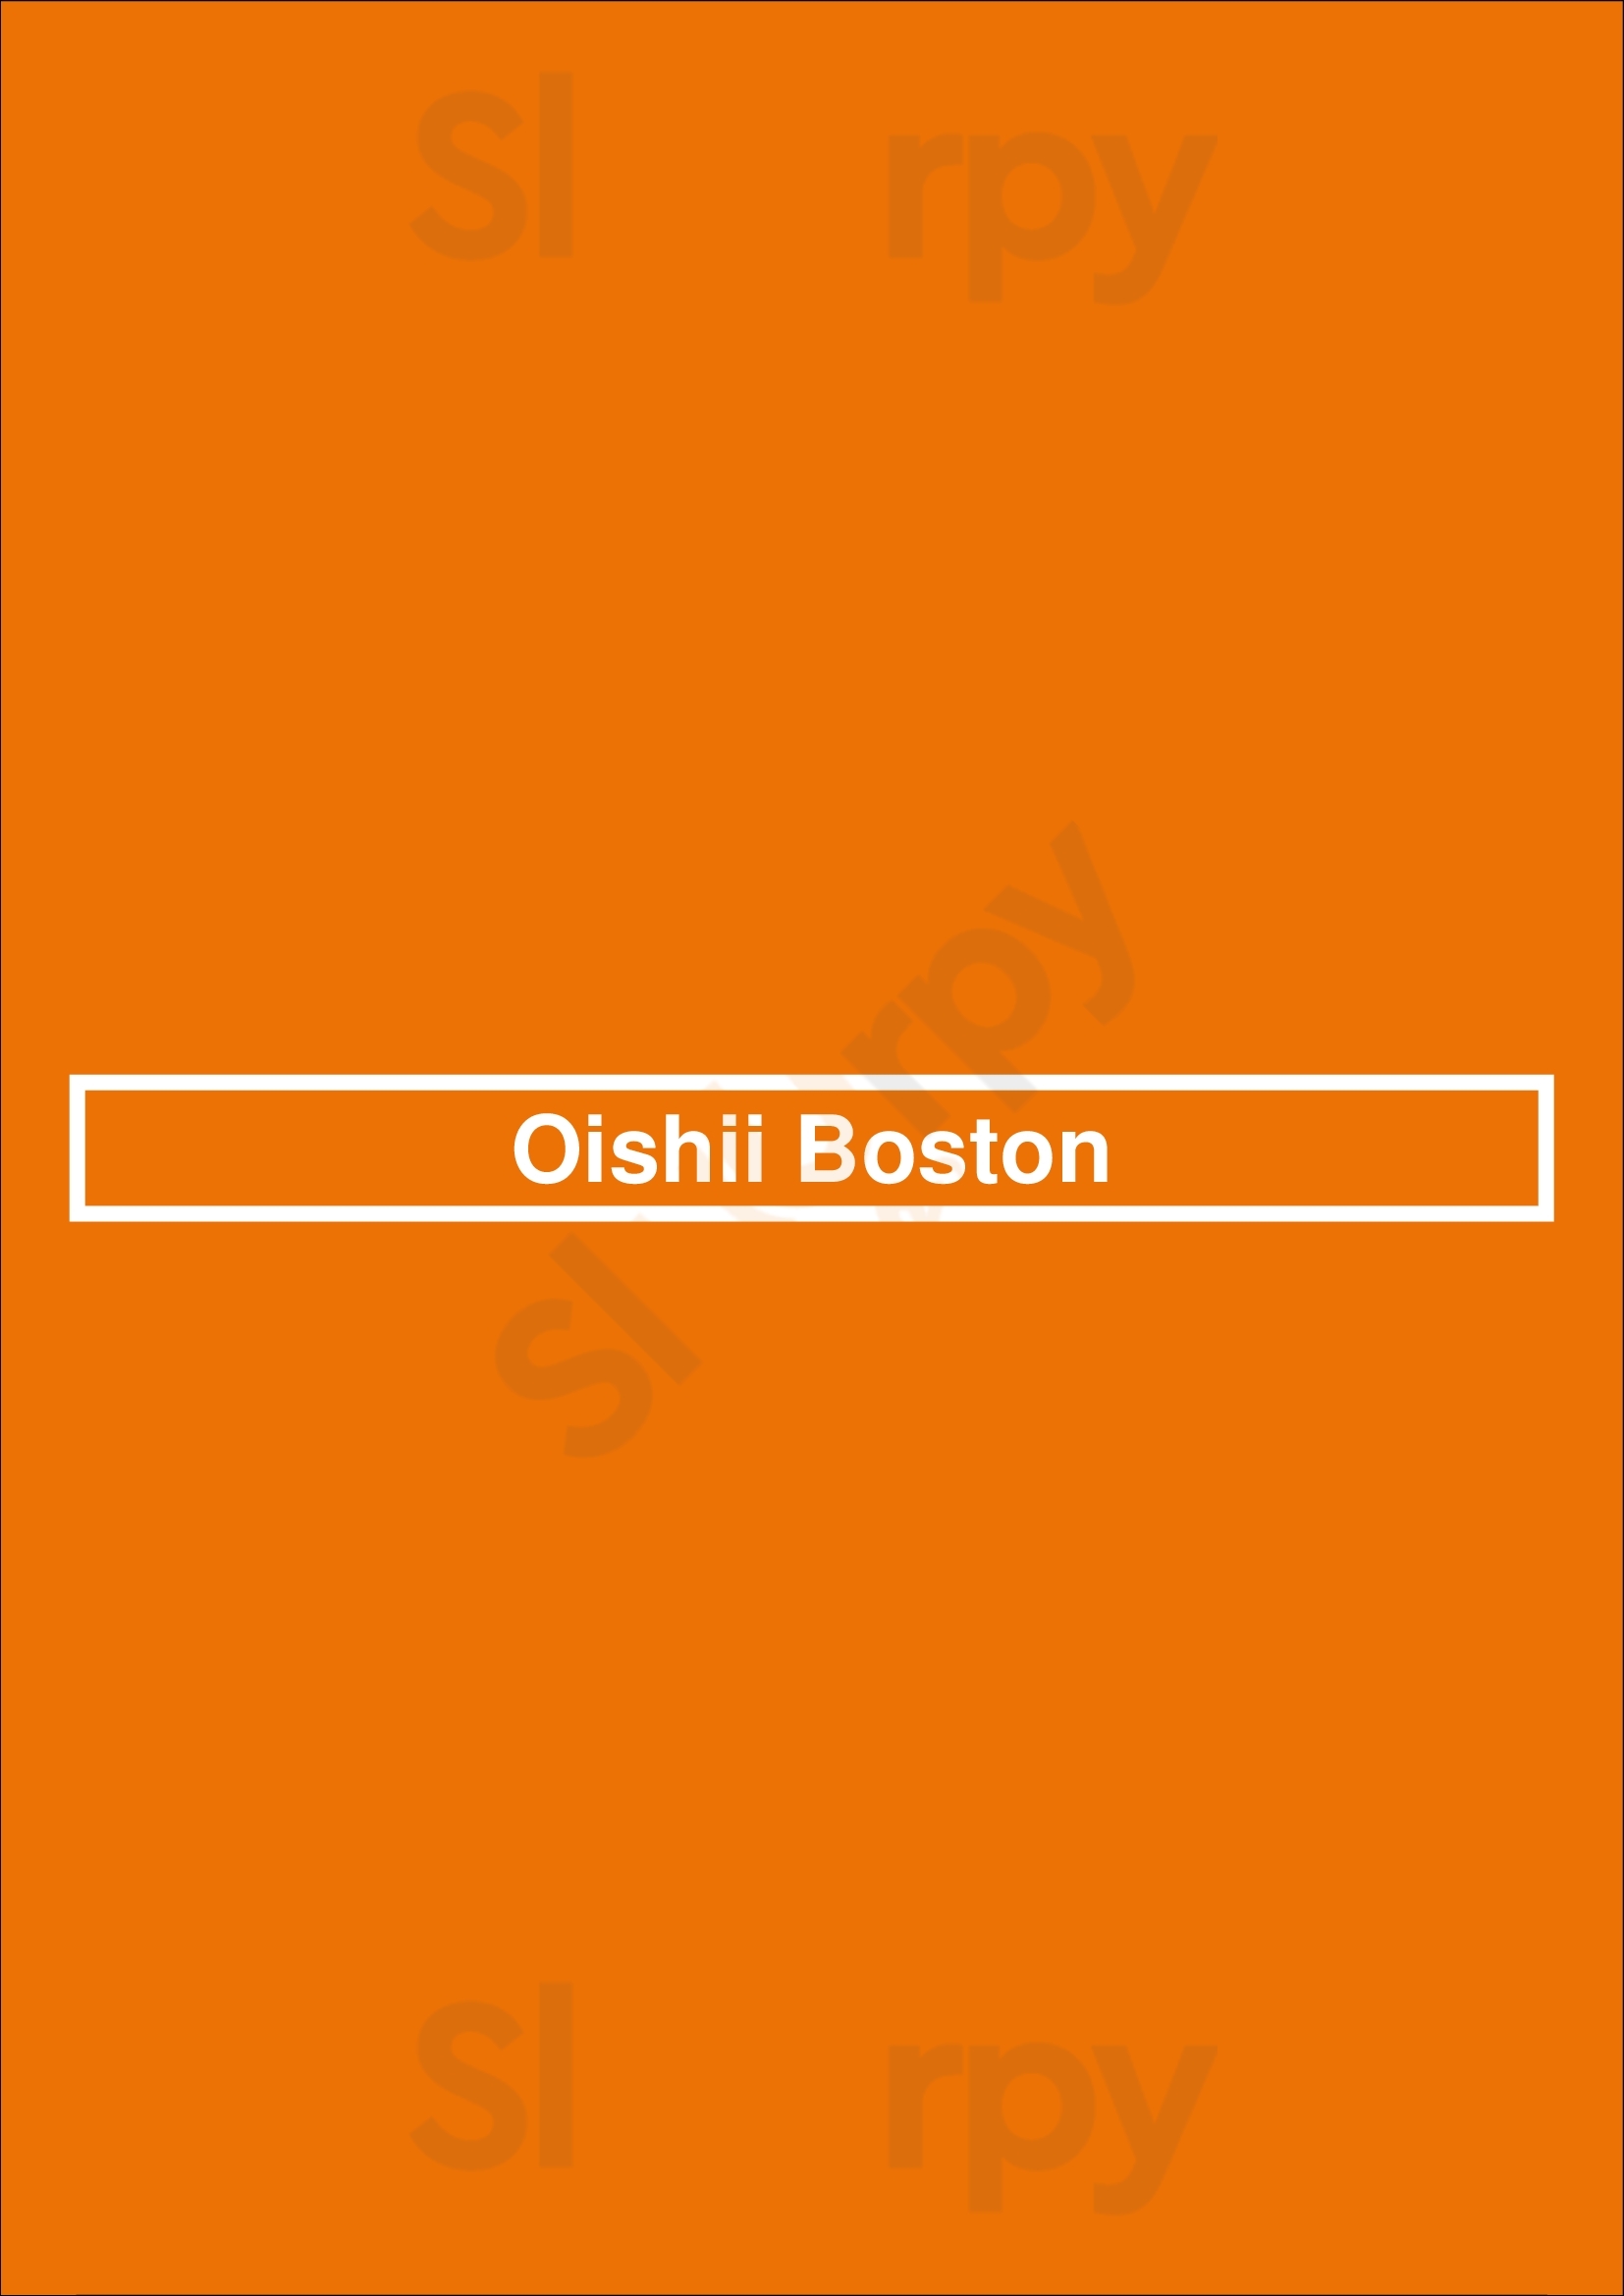 Oishii Boston Boston Menu - 1